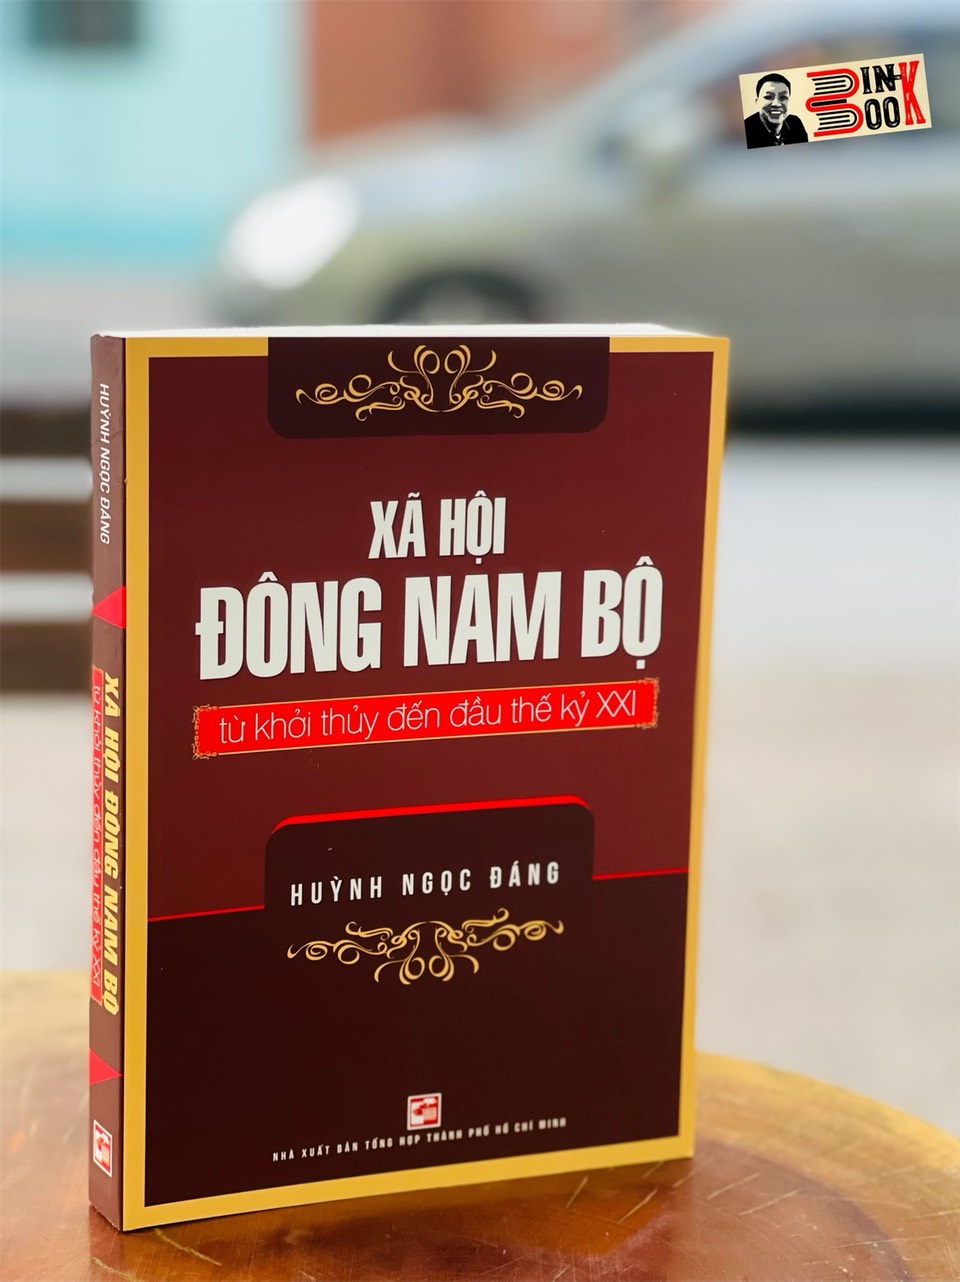 XÃ HỘI ĐÔNG NAM BỘ từ khởi thuỷ đến đầu thế kỷ XXI - Huỳnh Ngọc Đáng – Nxb Tổng hợp Tp Hồ Chí Minh (bìa mềm)